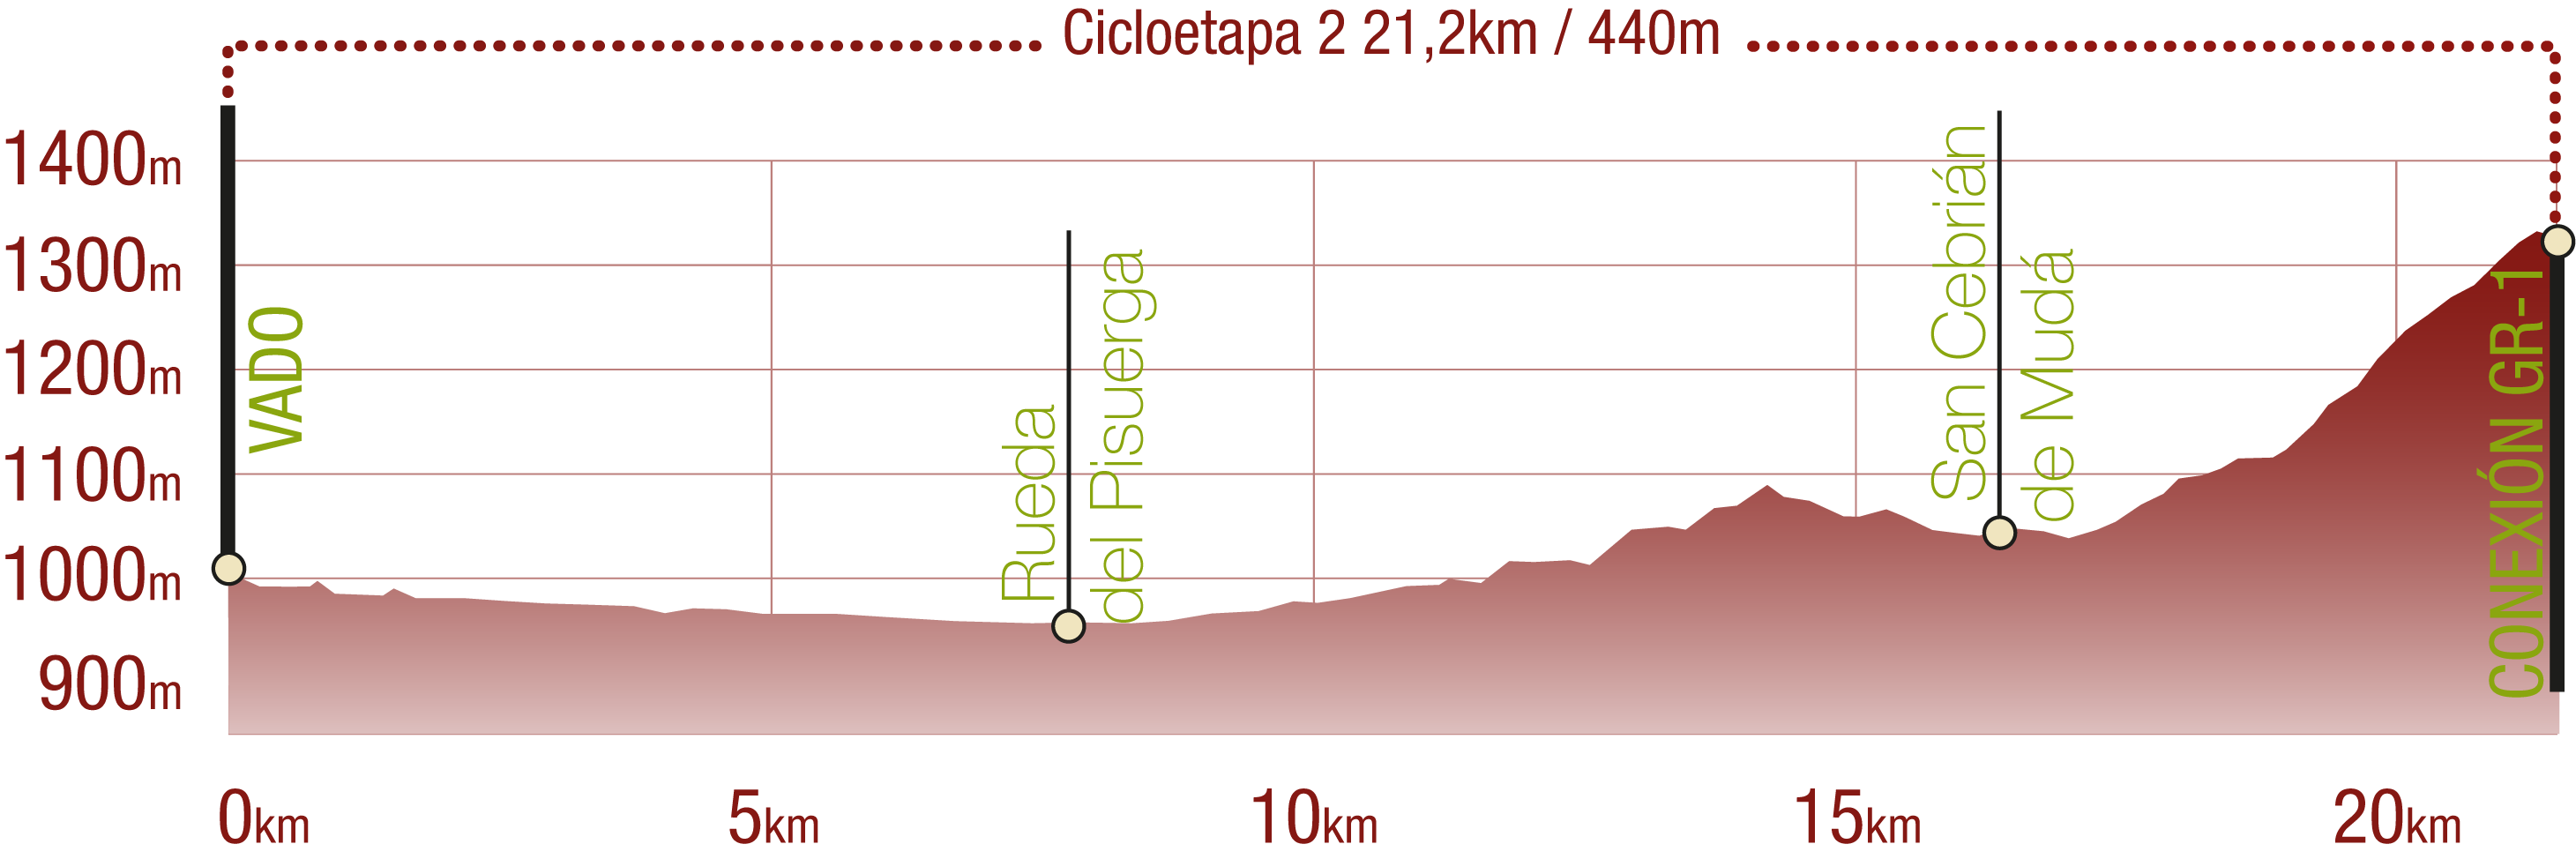 Perfil 
Perfil de la Cicloetapa 2 del CN del Románico Palentino: 21,2 km / Desnivel de subida 440 m

